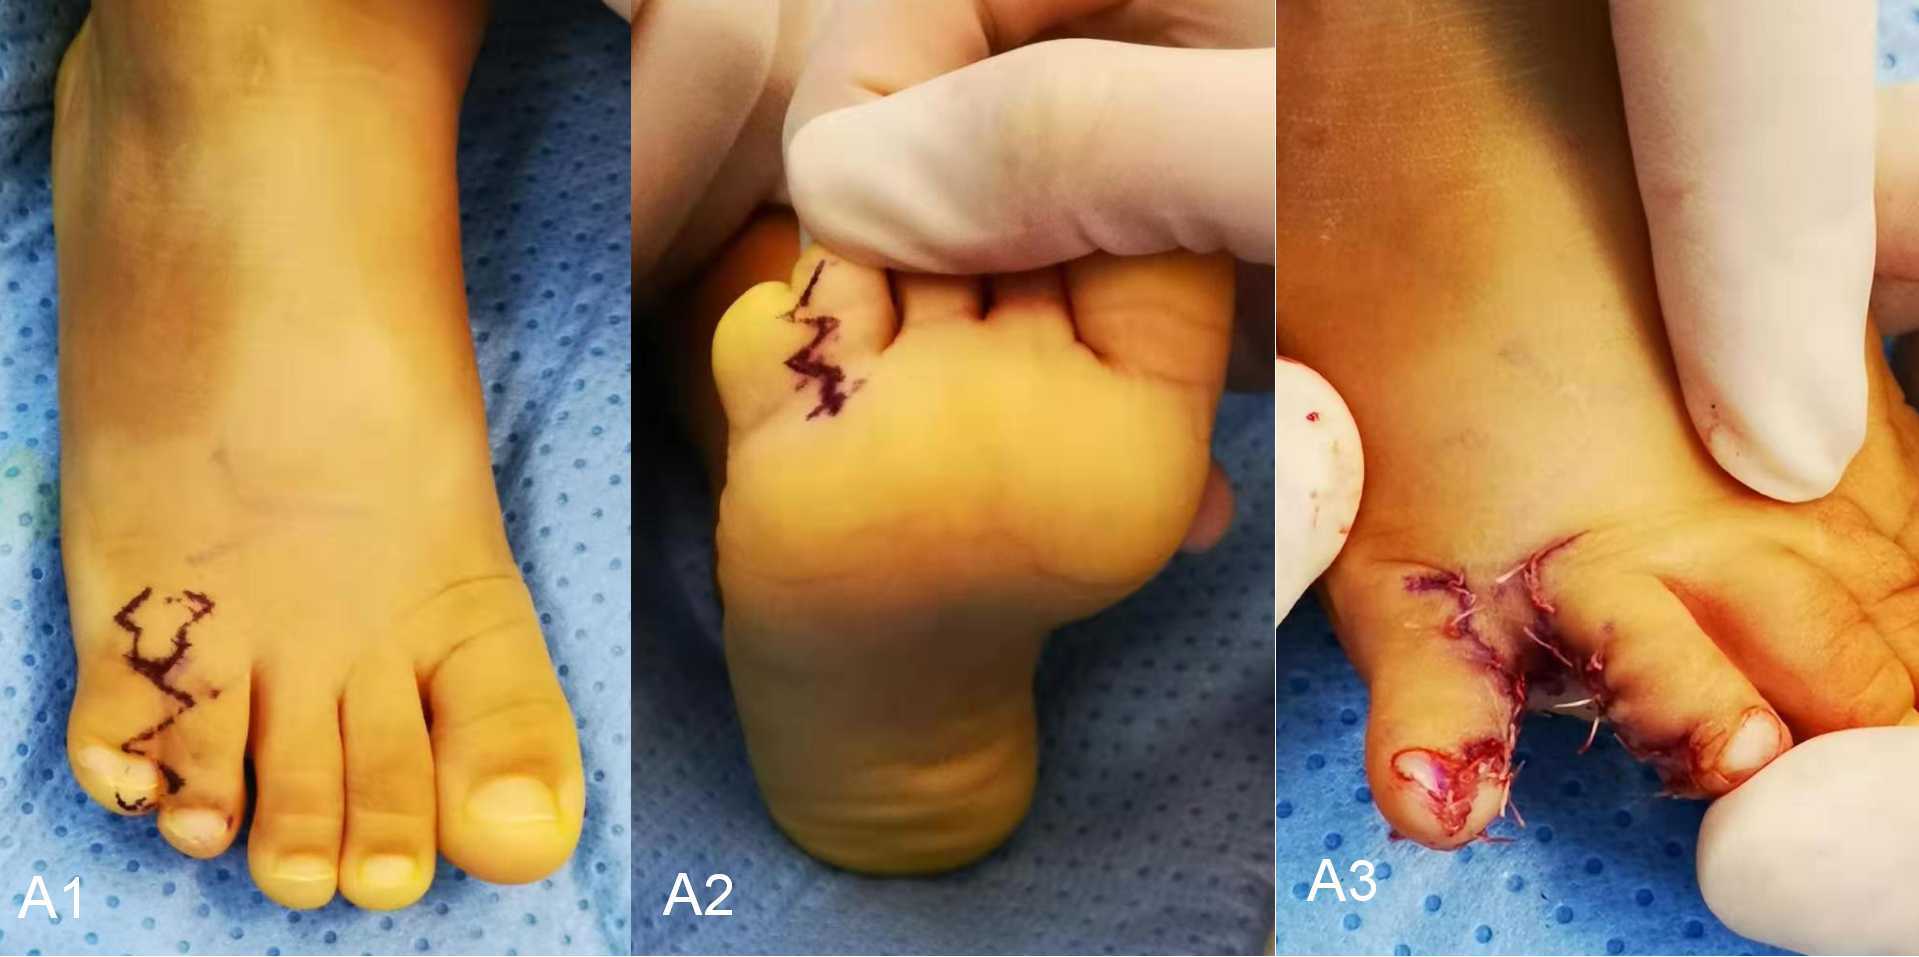 小朋友出生后发现足趾多趾并趾畸形,该怎么办?